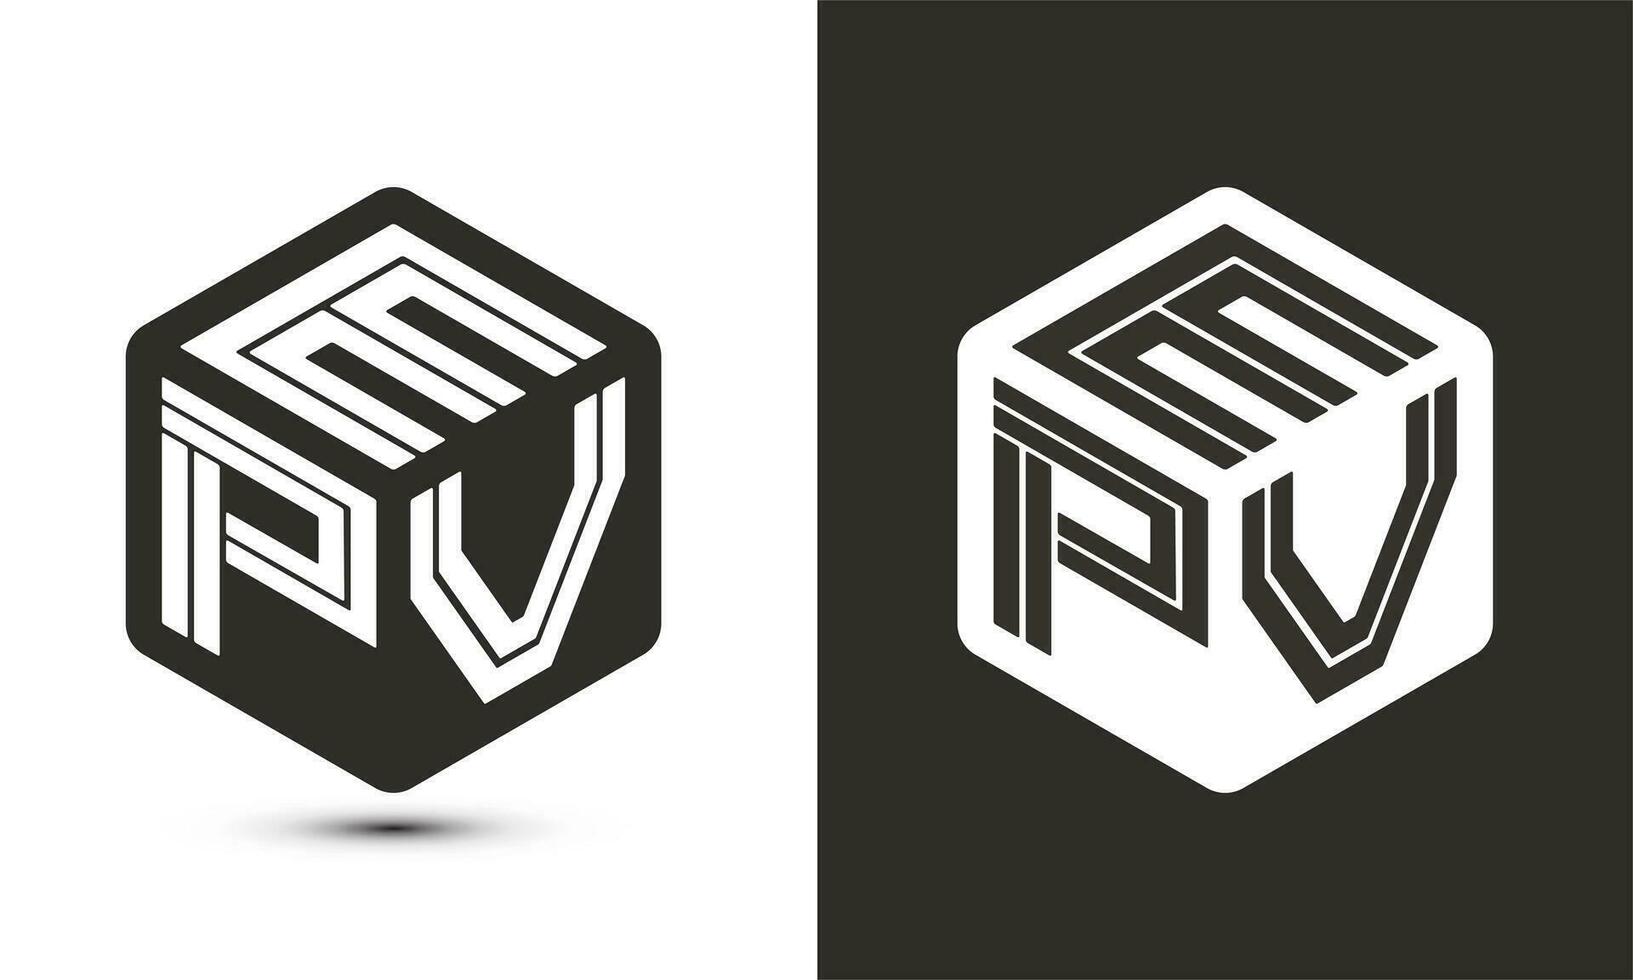 epv brief logo ontwerp met illustrator kubus logo, vector logo modern alfabet doopvont overlappen stijl.